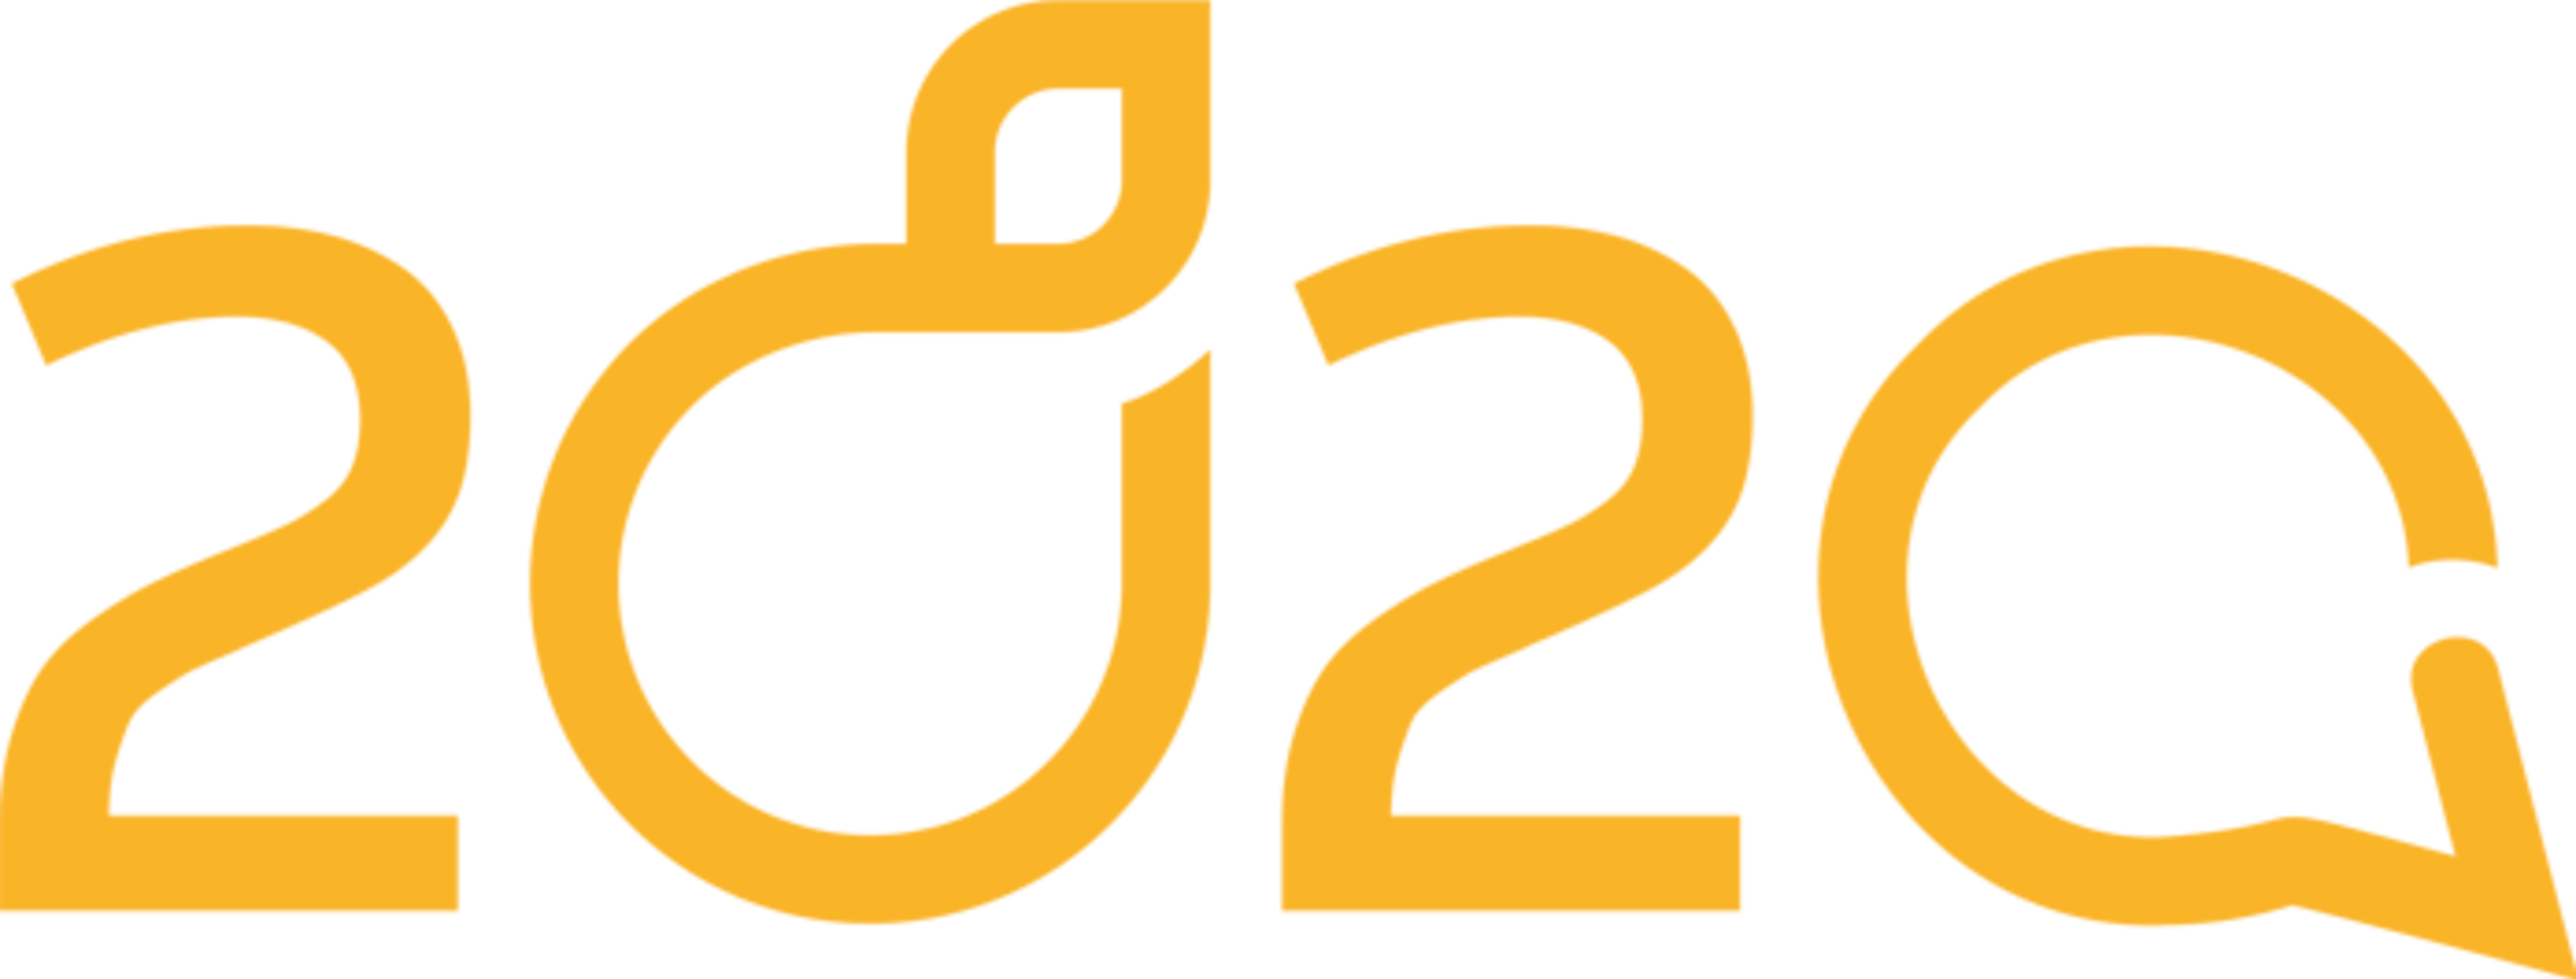 2020 - Agentur für Nachhaltigkeit und Kommunikation logo